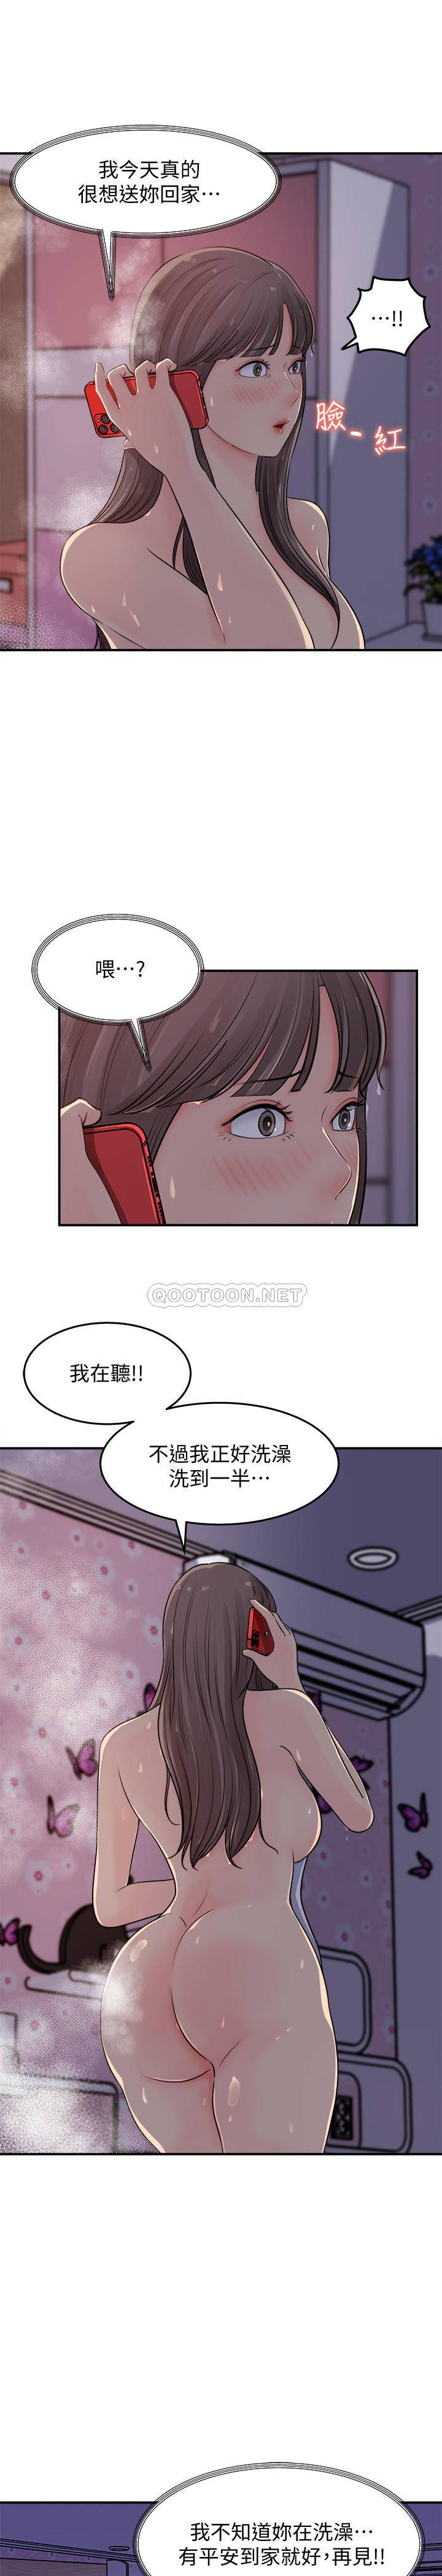 韩国污漫画 女神收藏清單 第16话 7